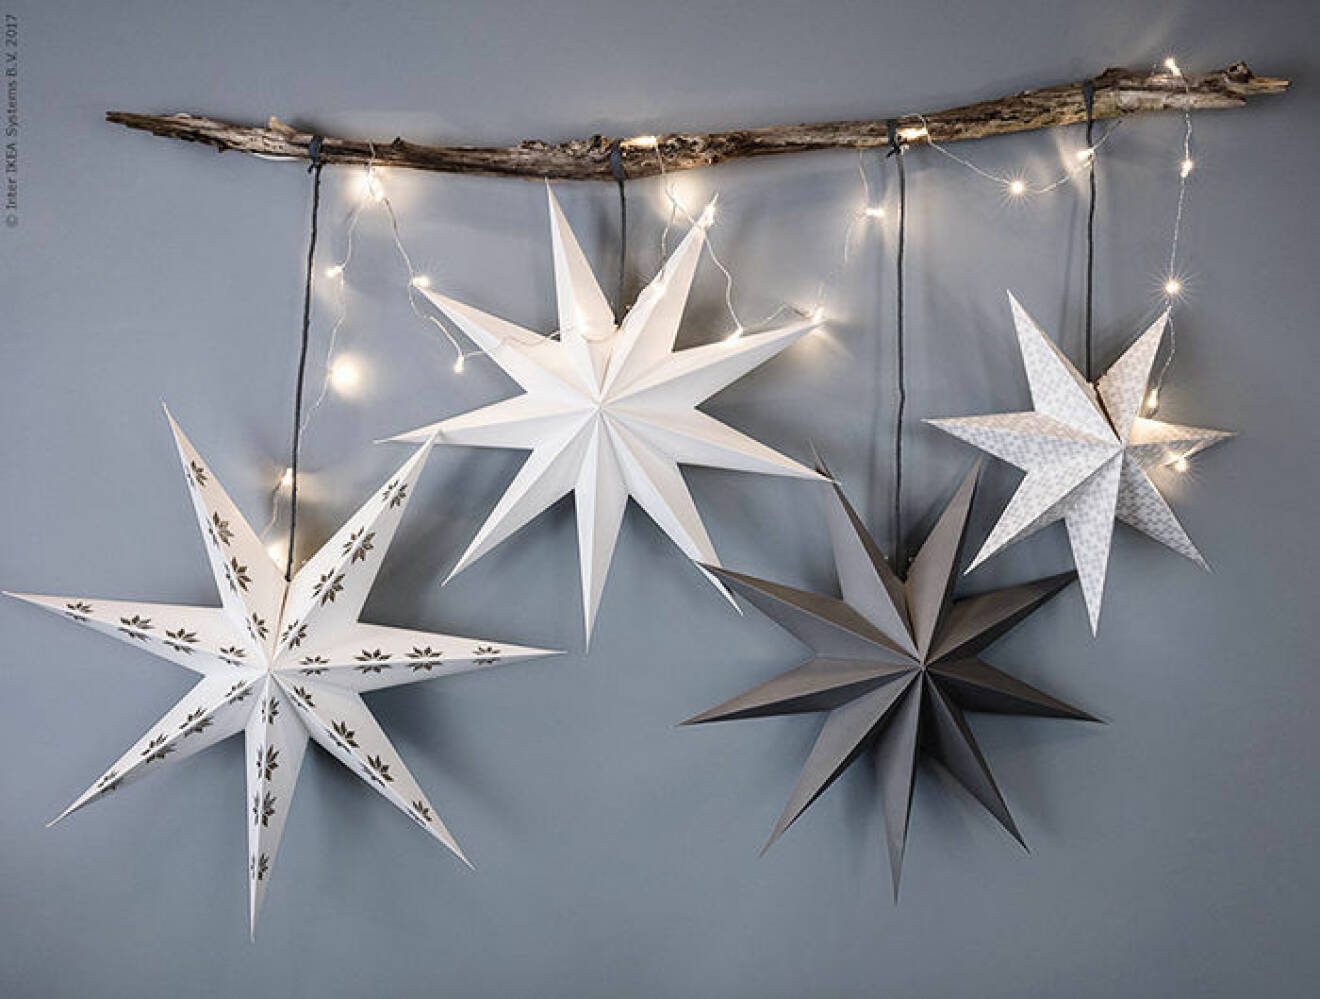 julstjärnor är fina även till nyårsfesten - här hos Ikea